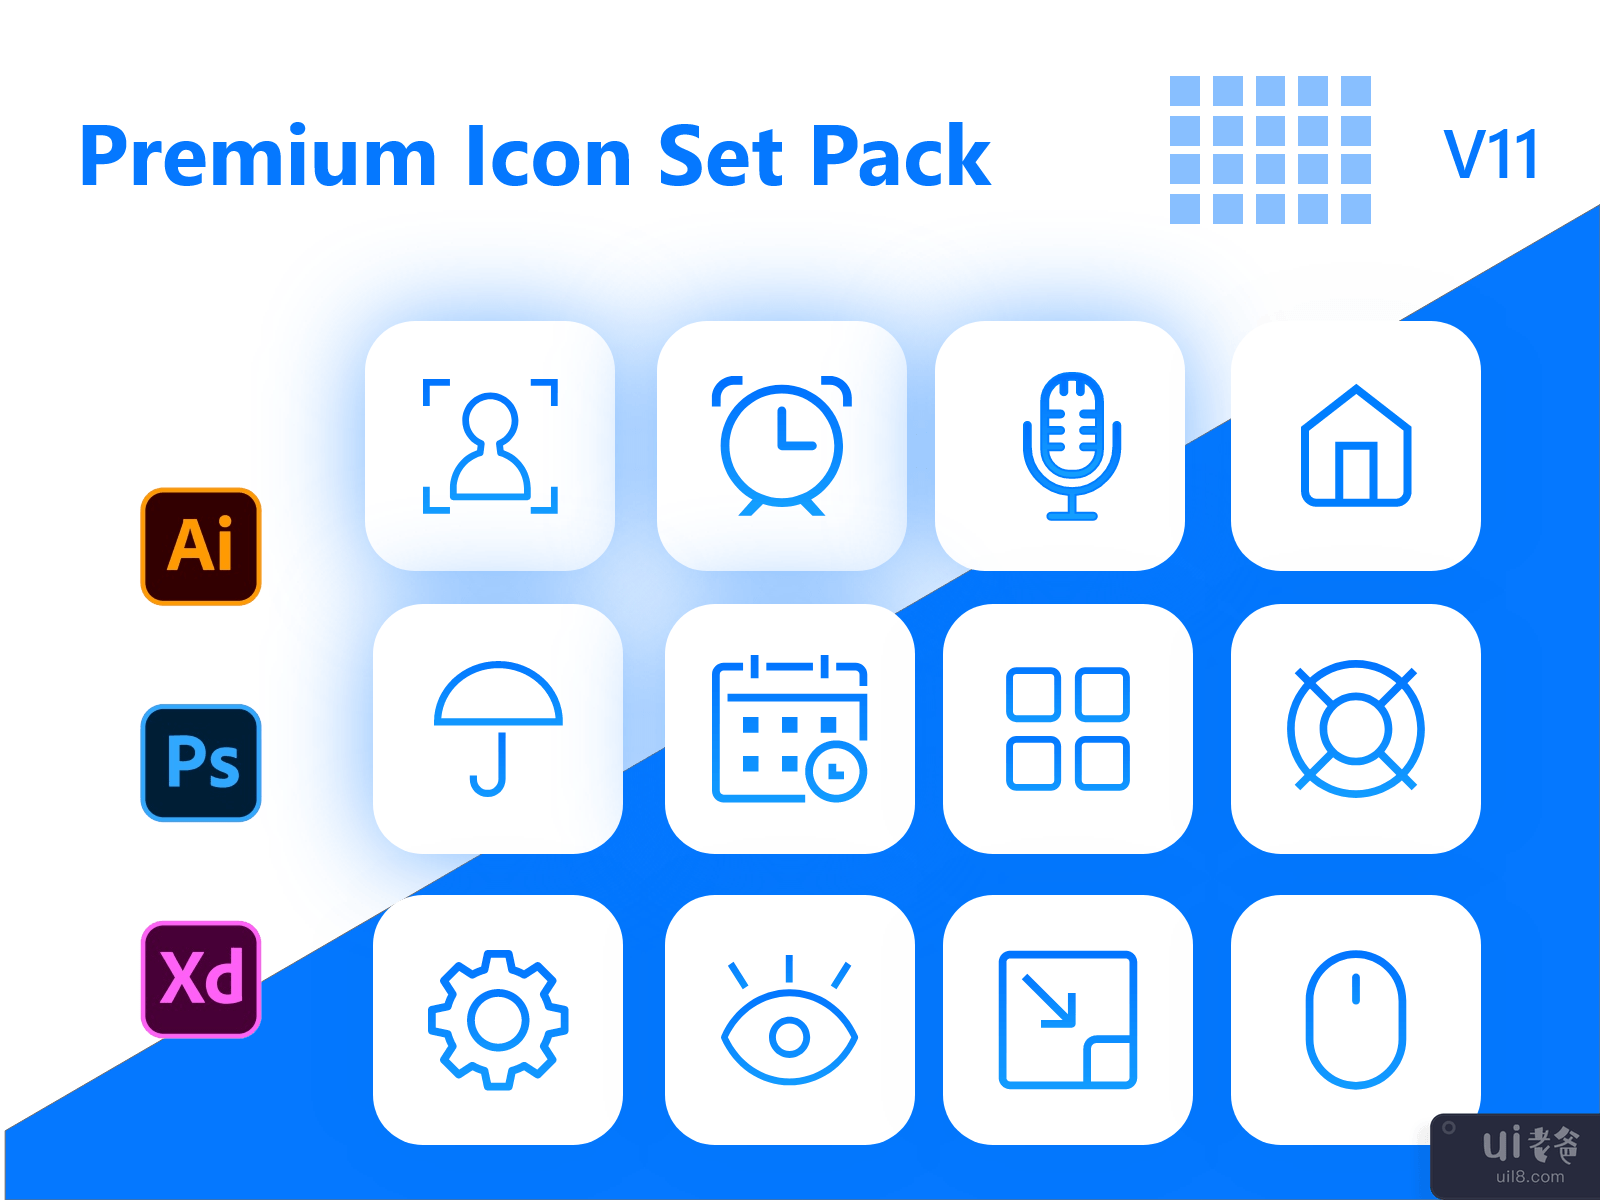 高级图标集包 v11 - 基本图标集(Premium Icon Set Pack v11 - Essential Icon Set)插图